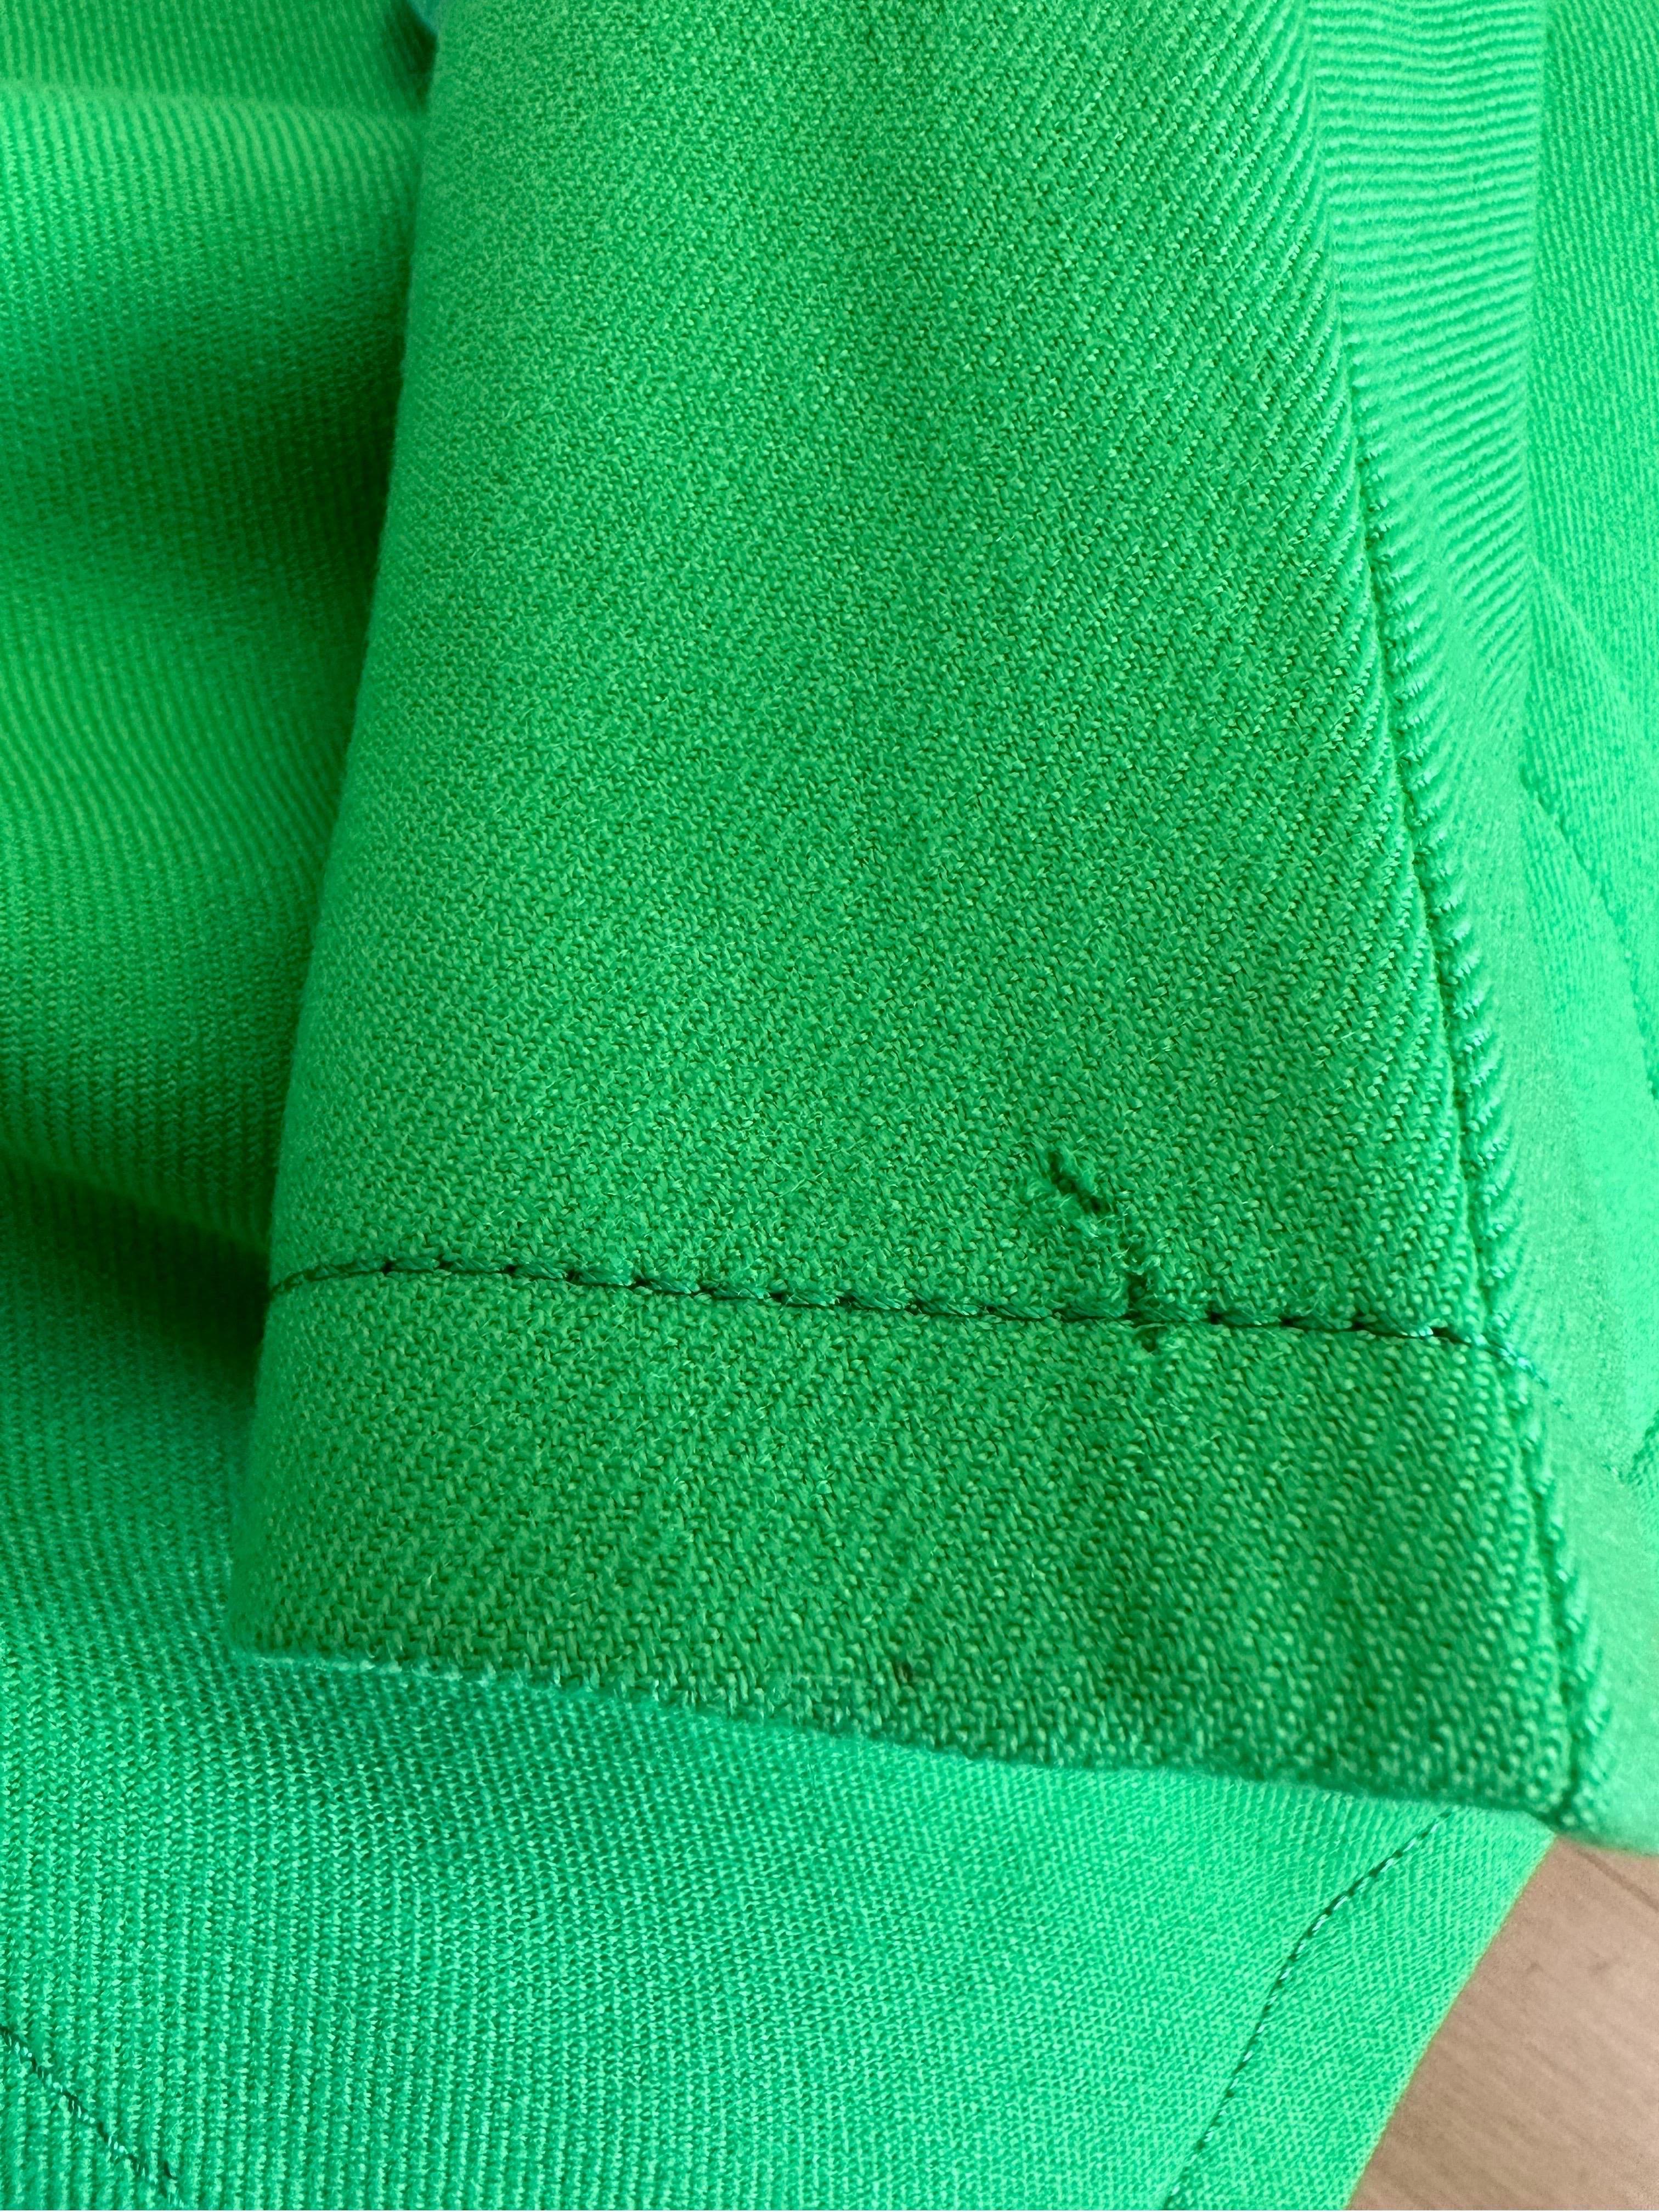 Pierre Cardin Promotion 1970s green wool jacket For Sale 8